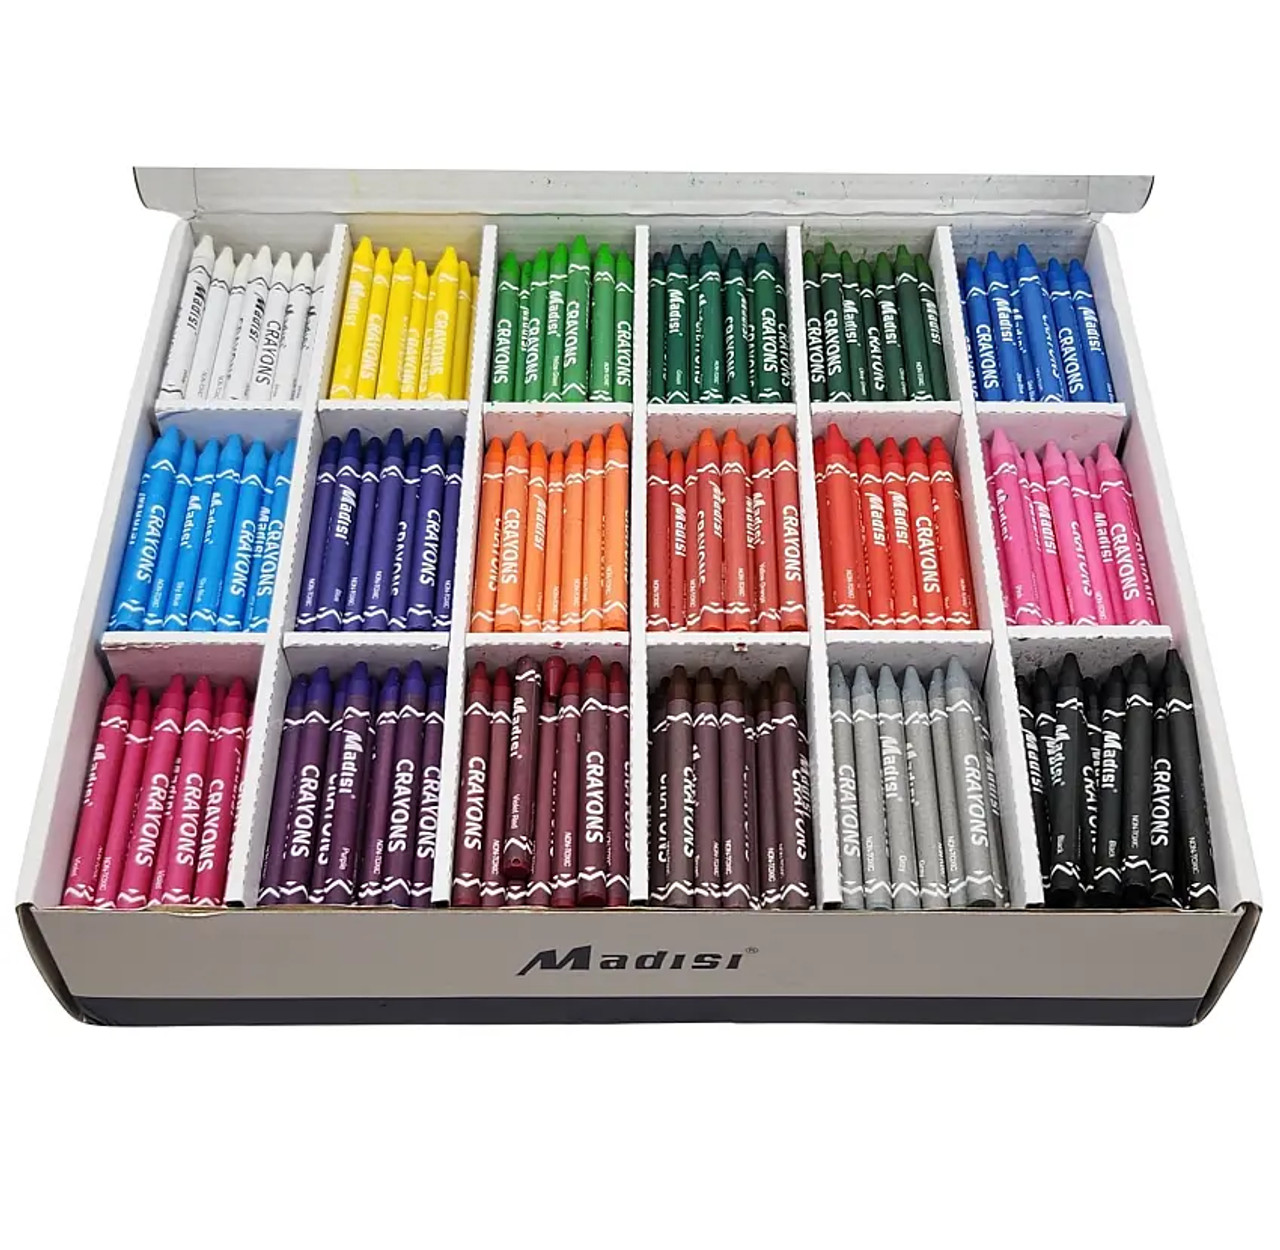 Box of Crayons 